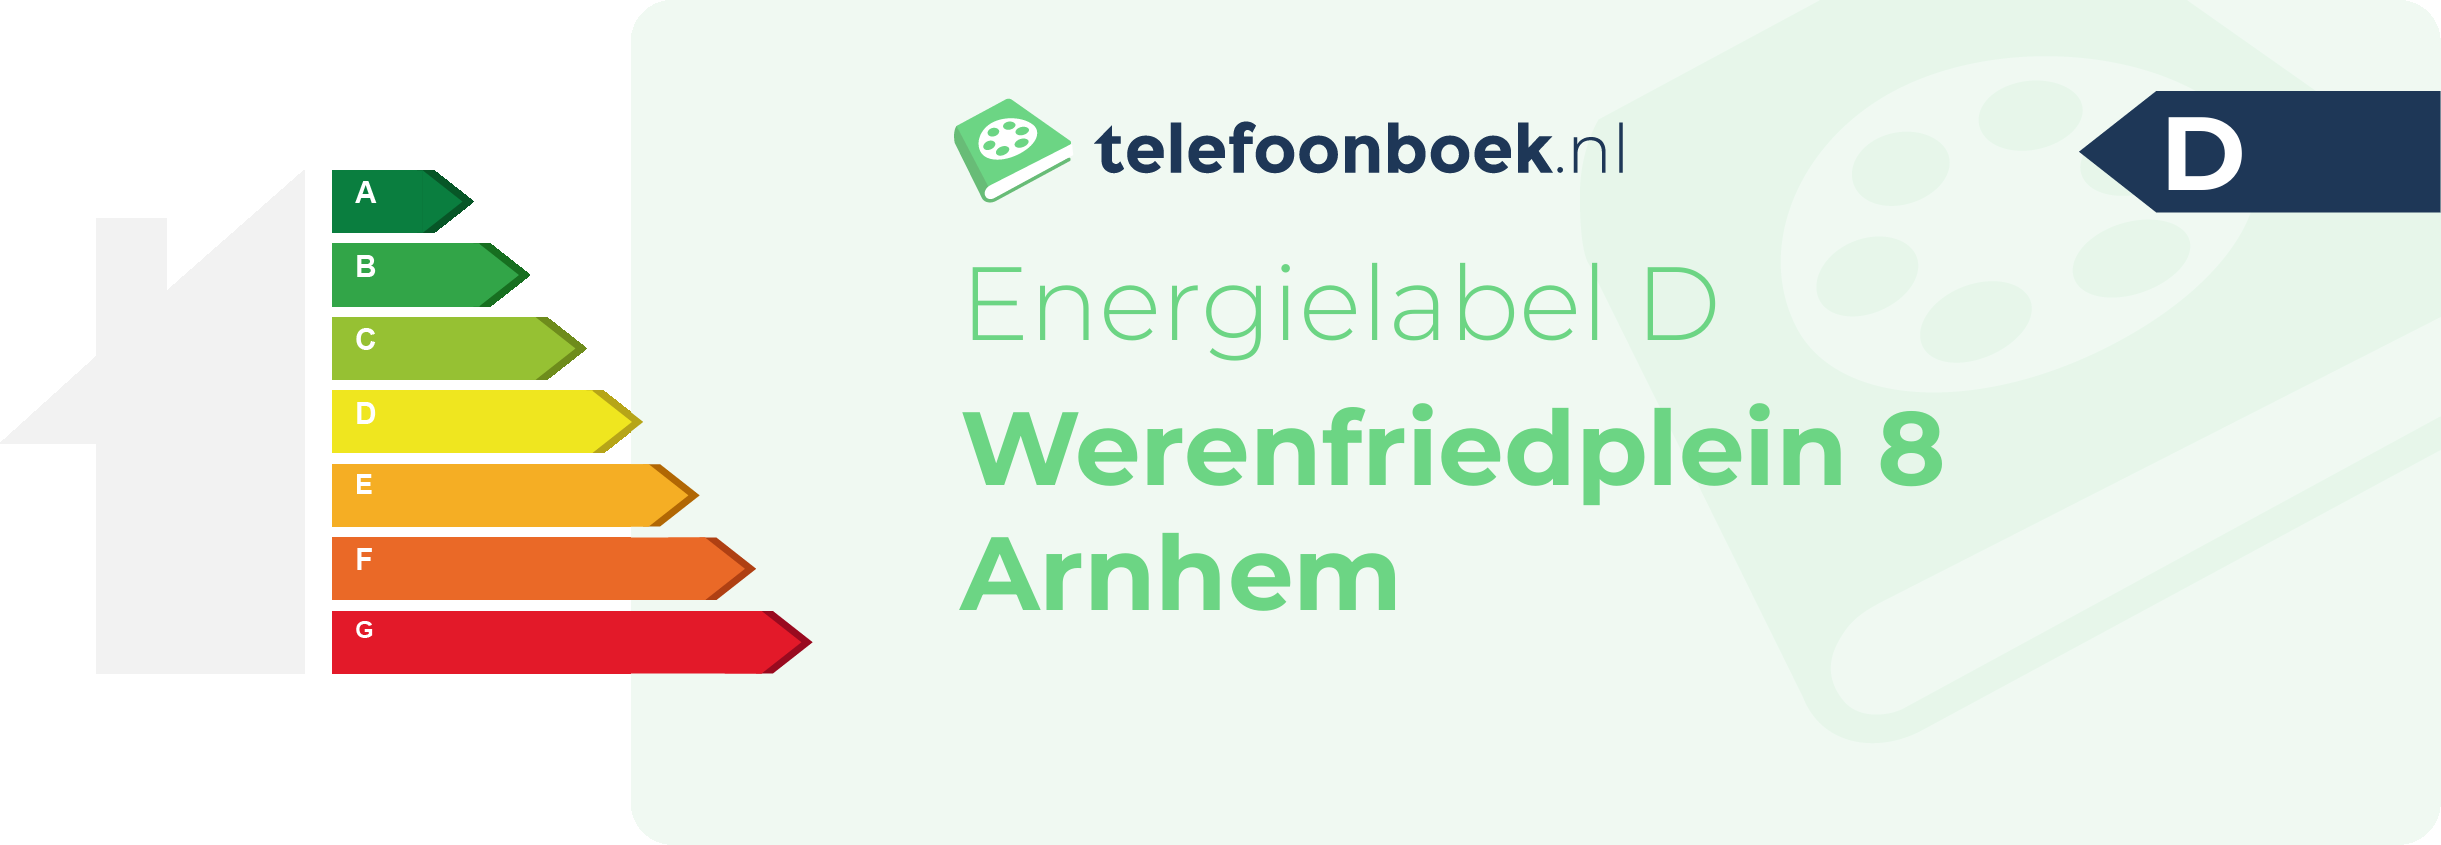 Energielabel Werenfriedplein 8 Arnhem